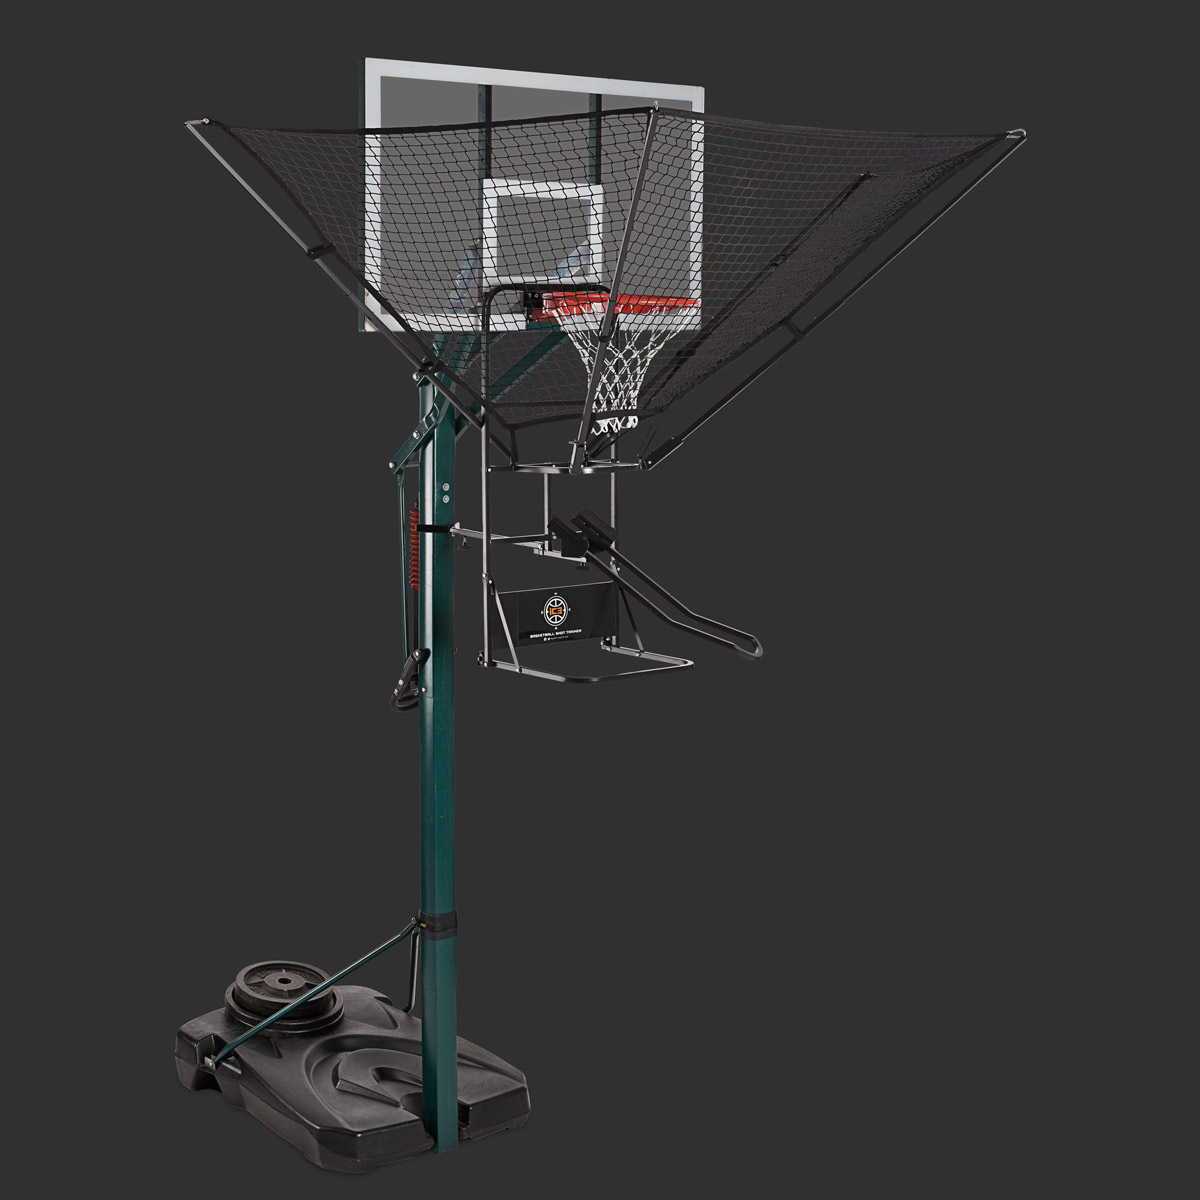 73200円 未使用品 送料無料 Dr. Dish iC3 Basketball Shot Trainer 並行輸入品